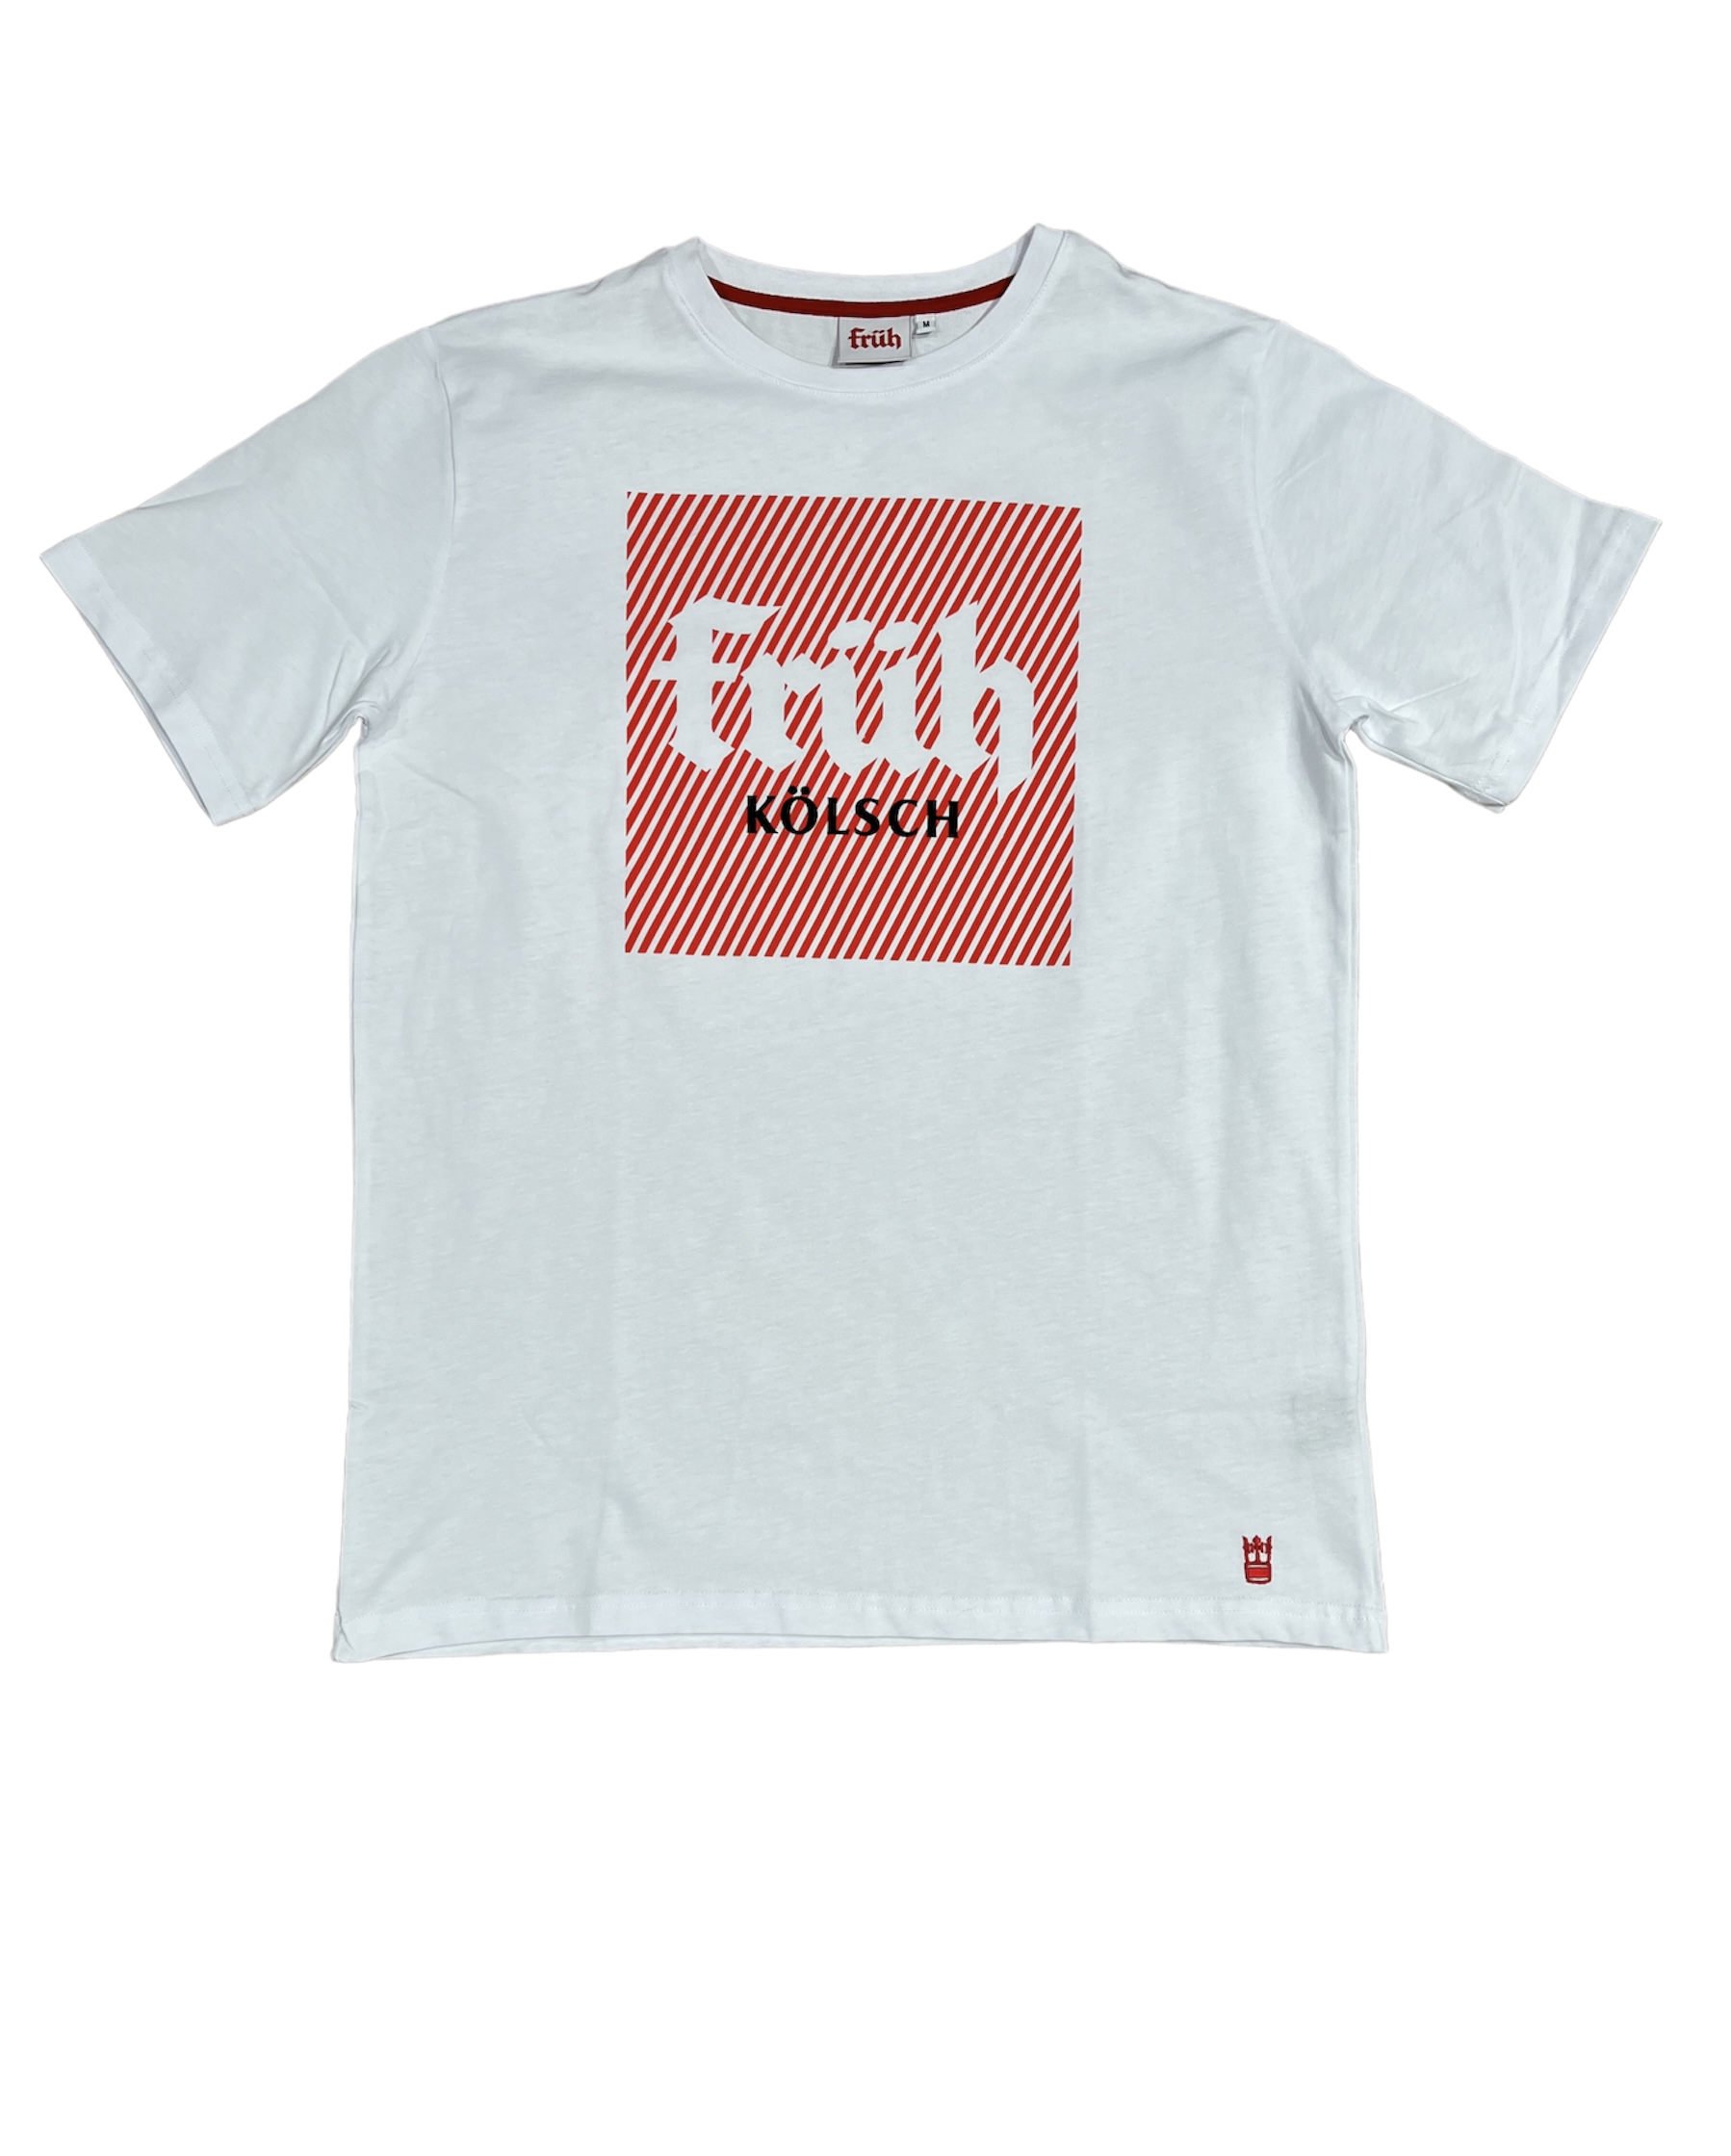 Früh T-Shirt weiss mit Früh Quadrat Logo XS